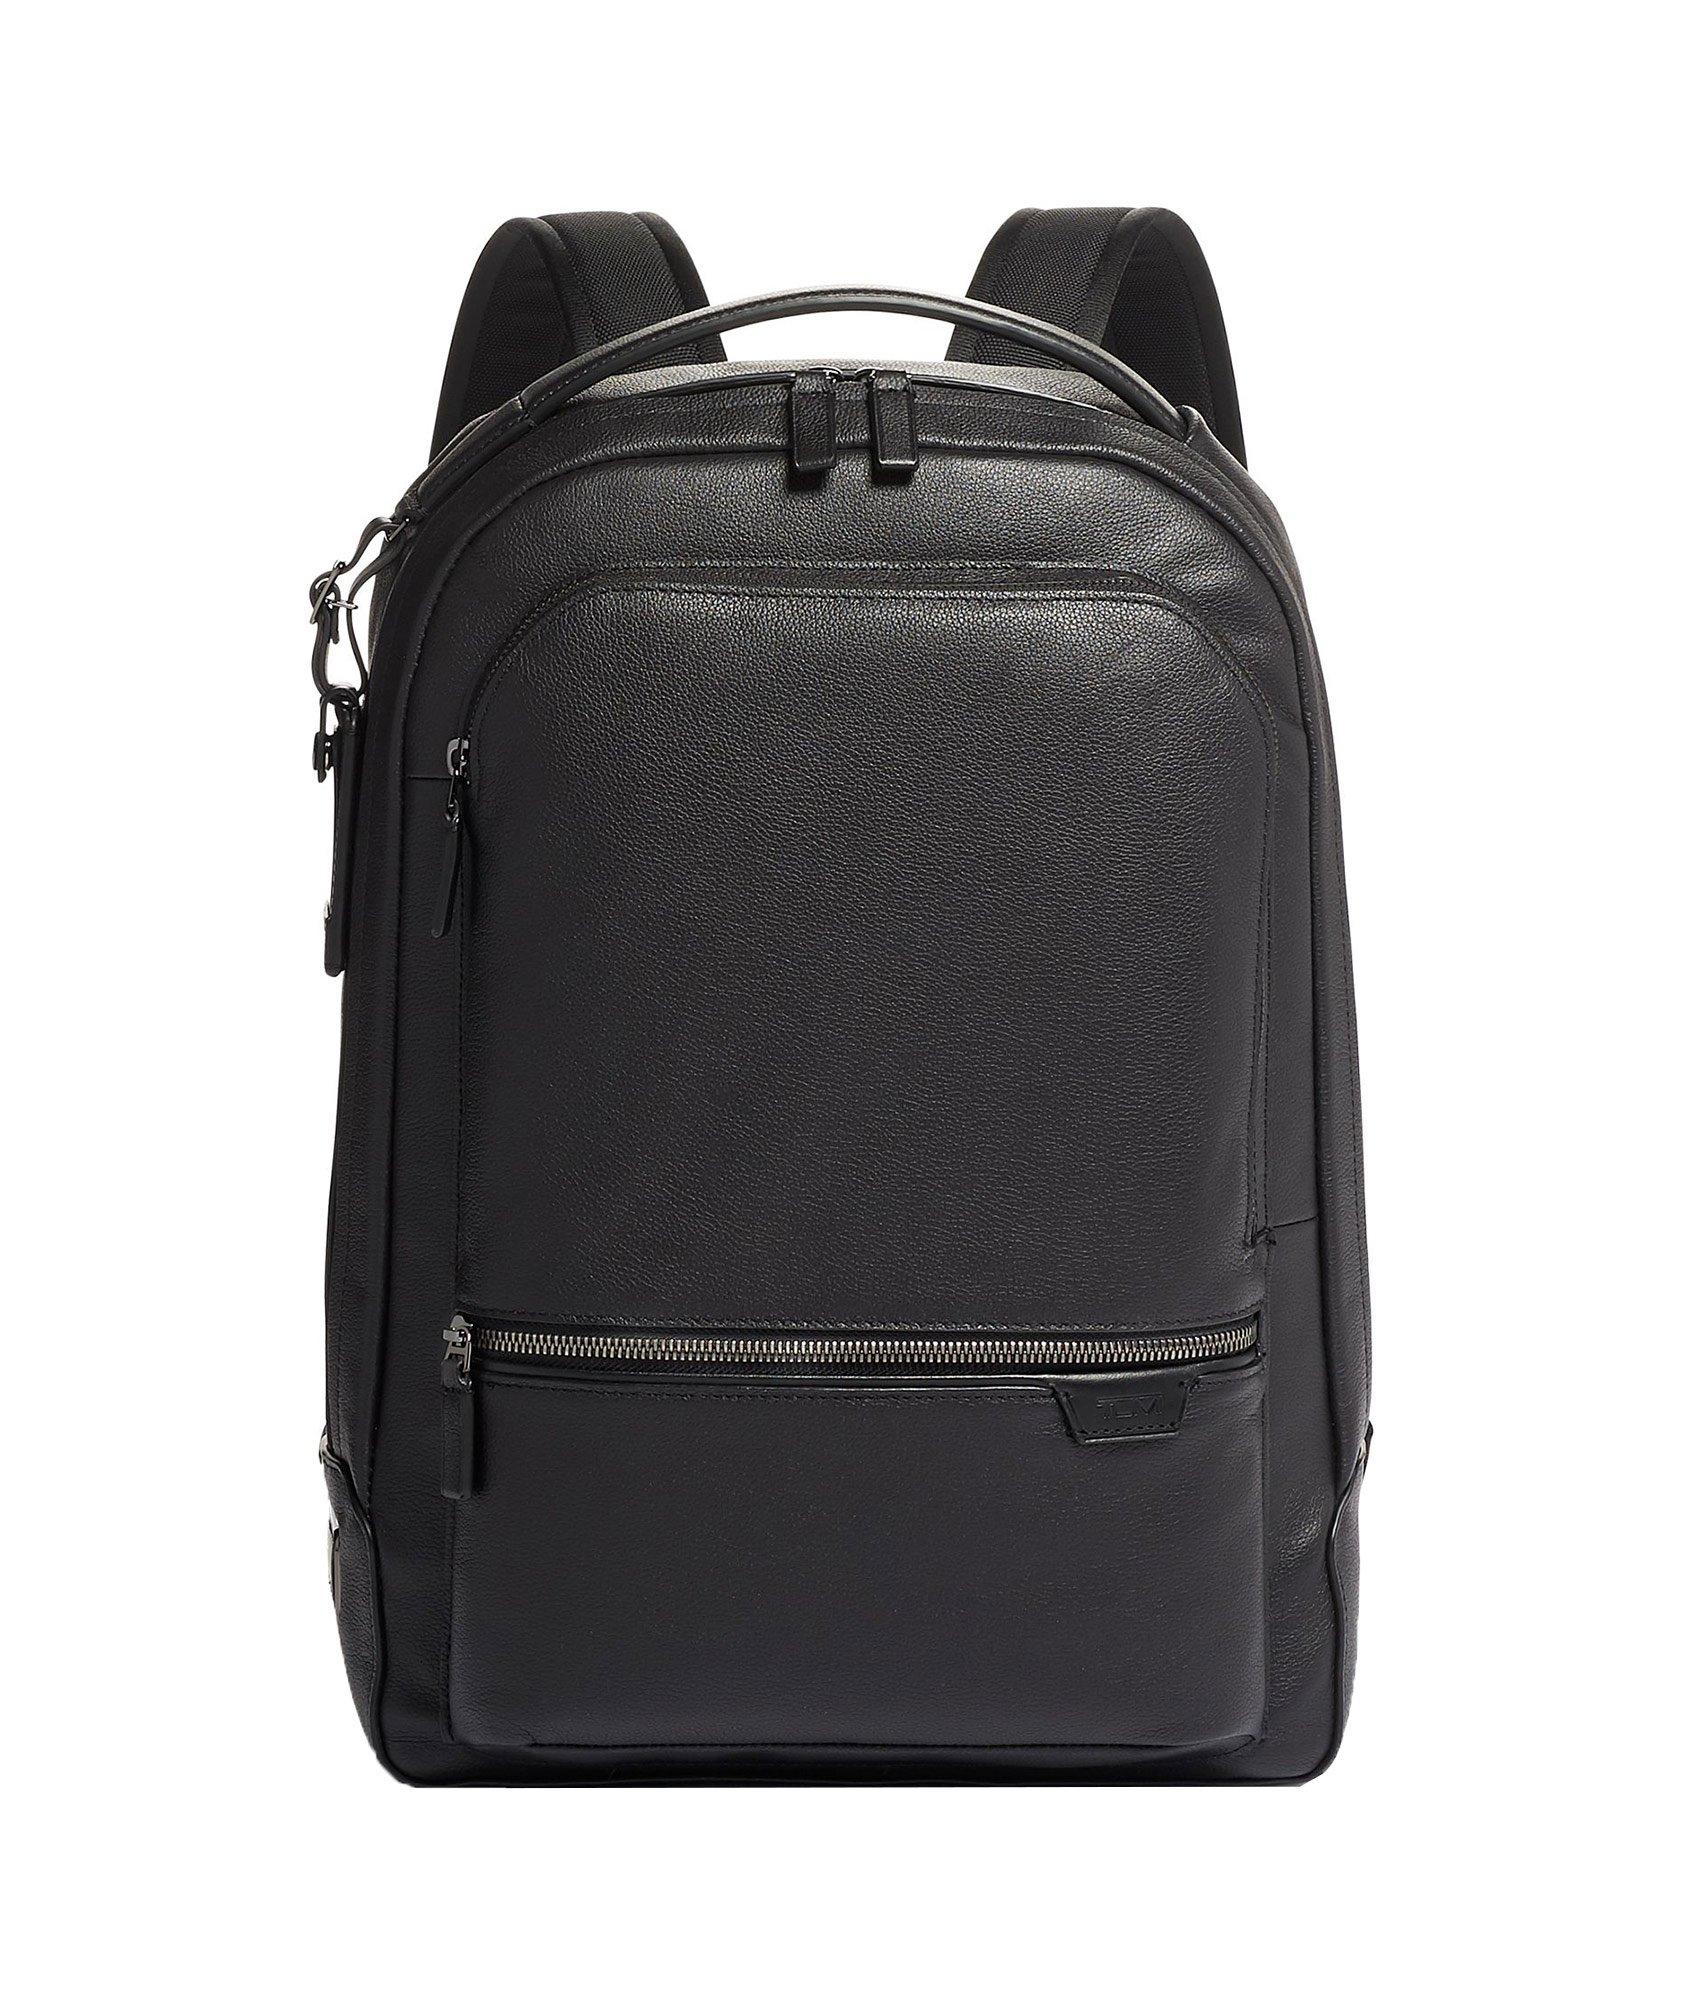 Bradner Leather Backpack  image 0